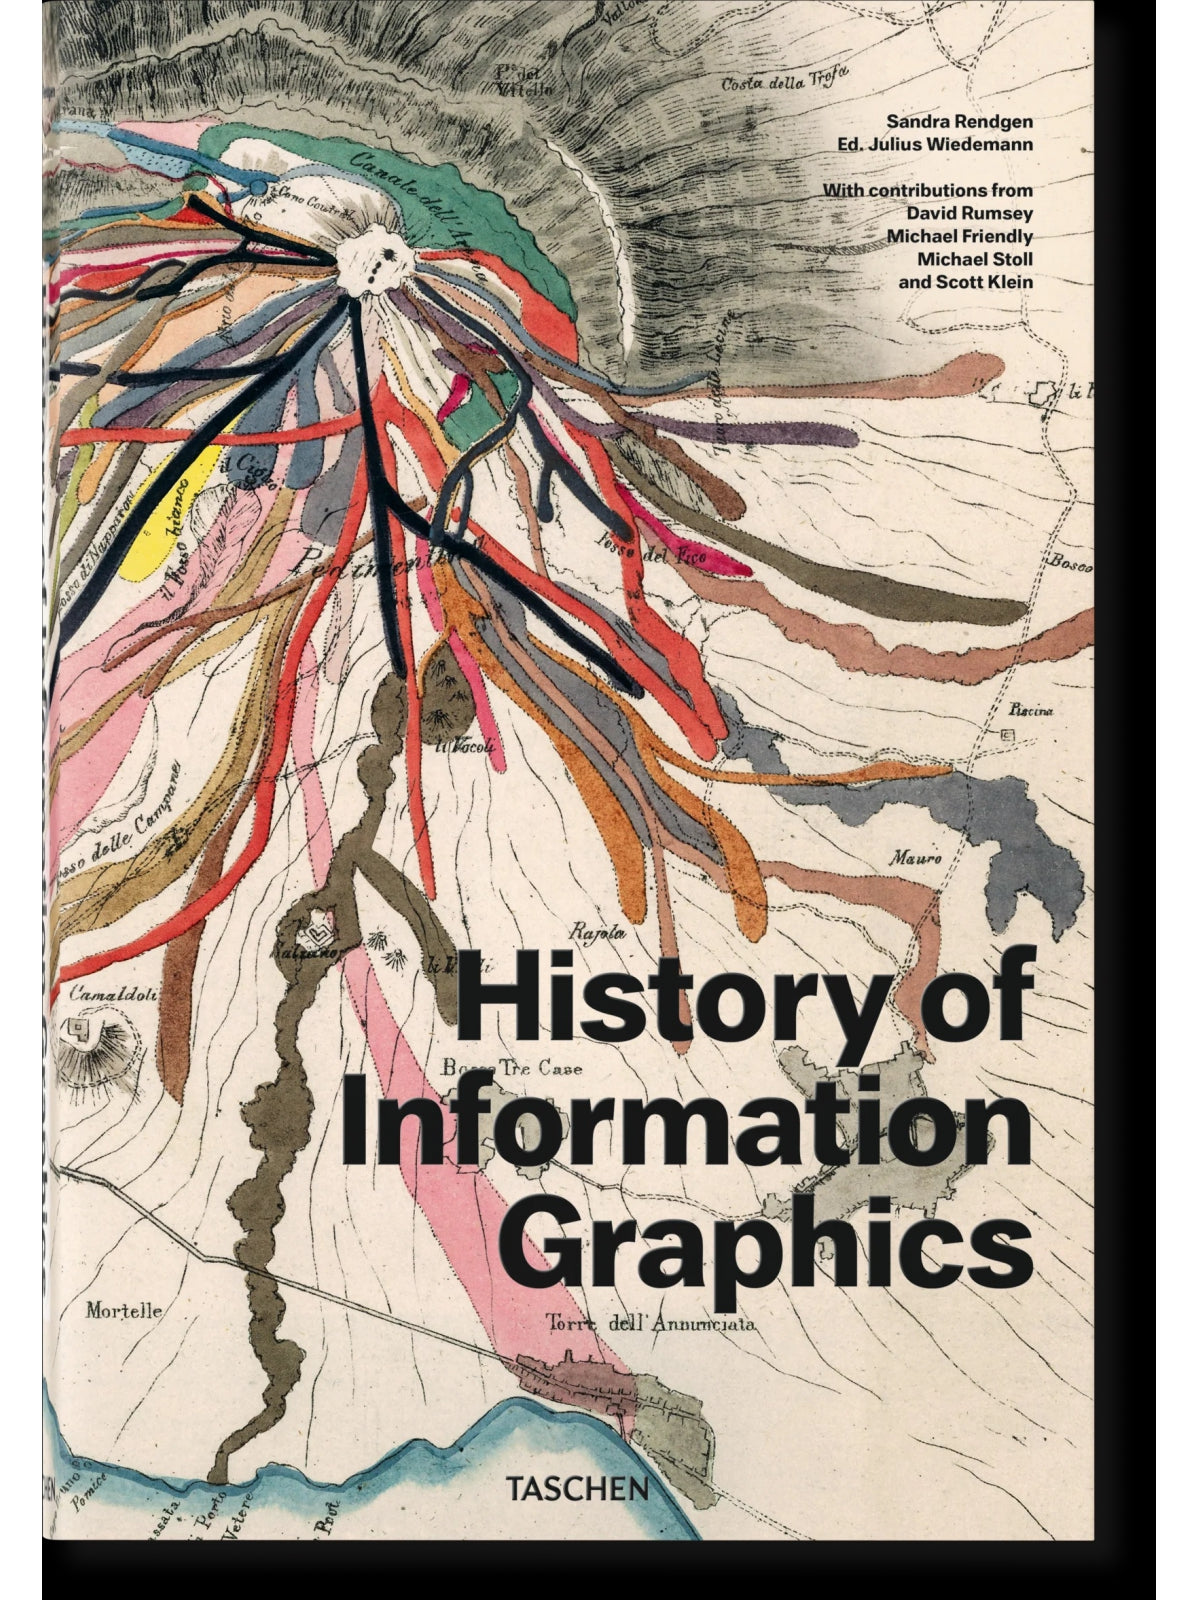 היסטוריה של גרפיקת מידע